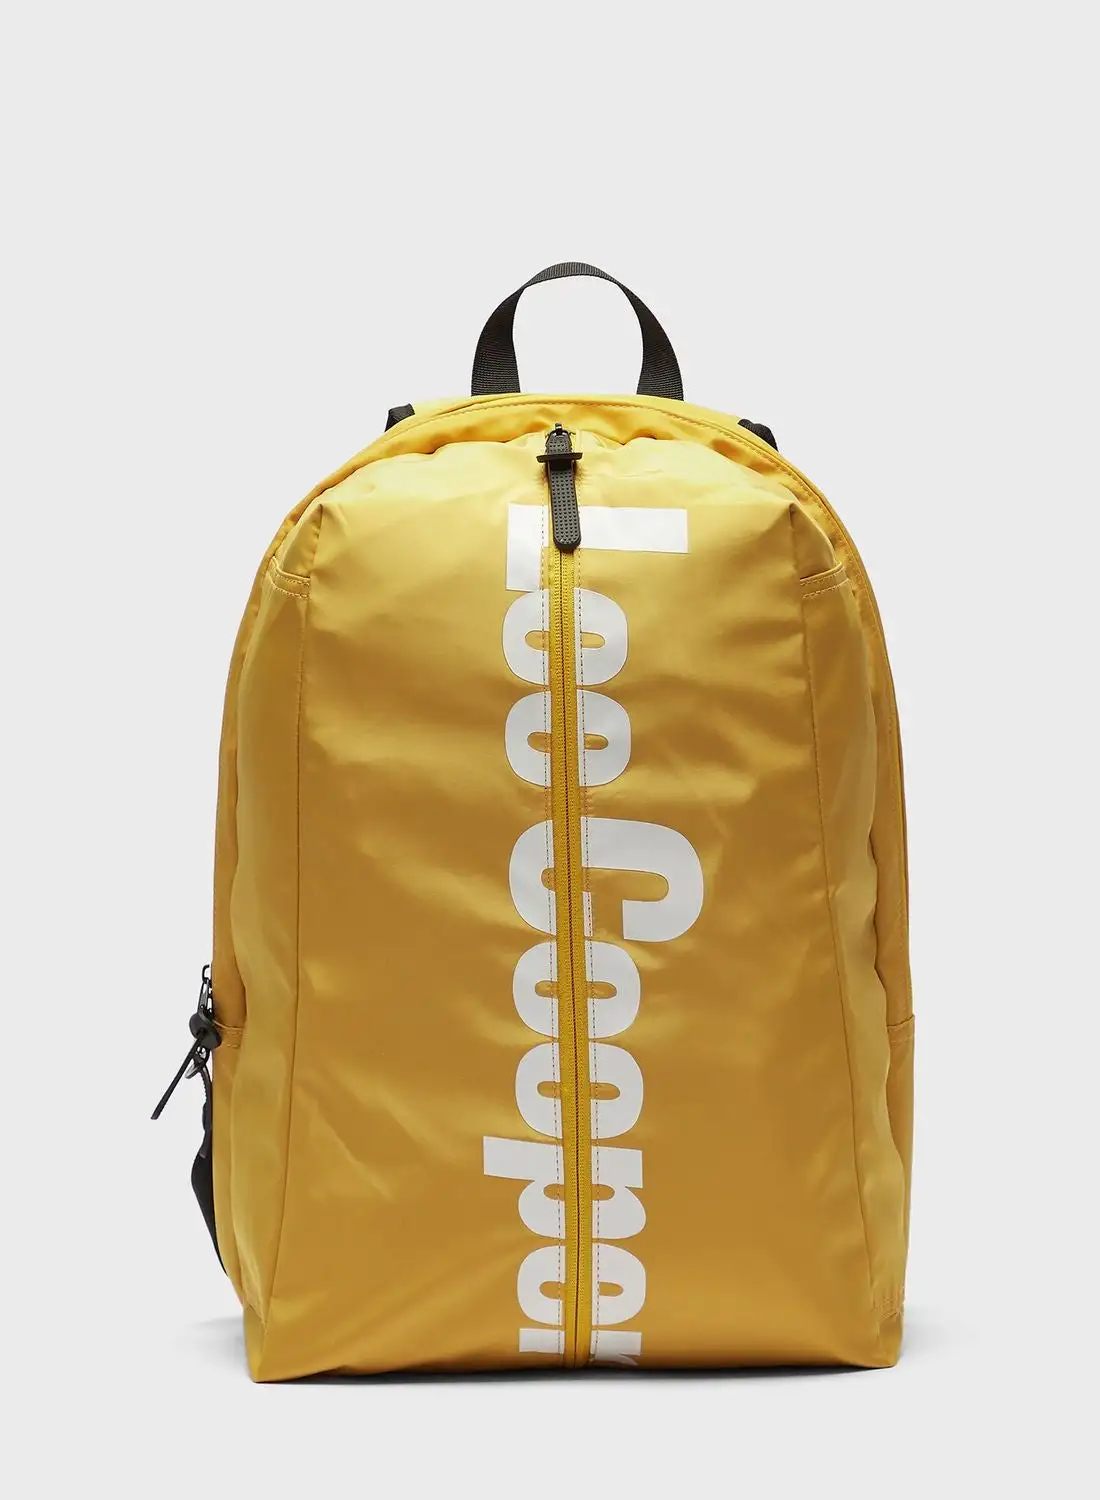 Lee Cooper Logo Backpack